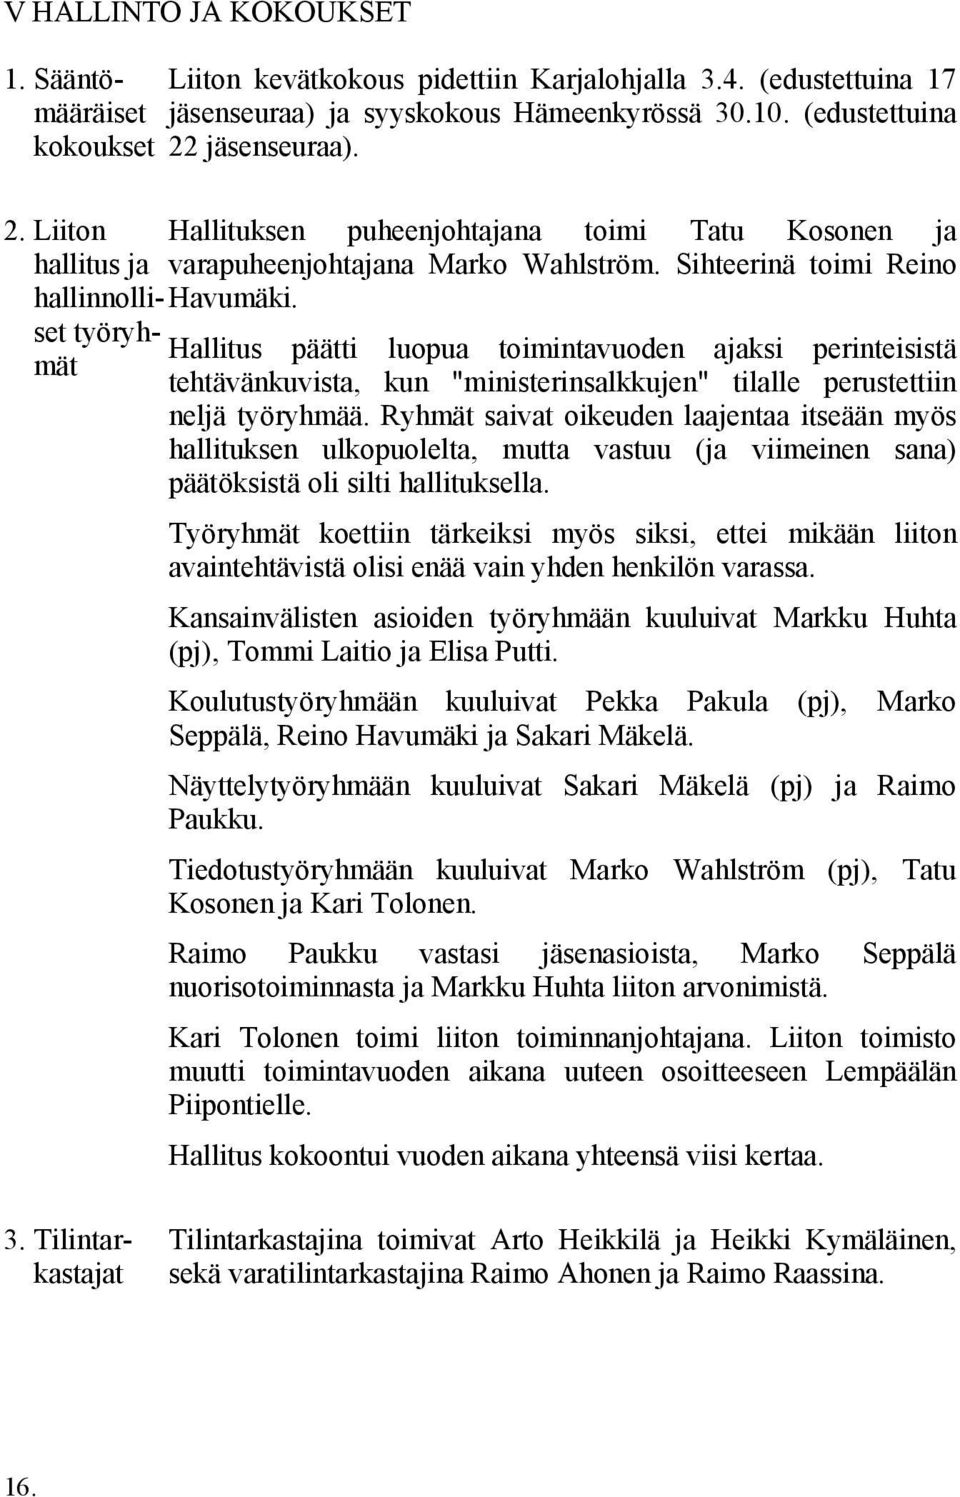 Sihteerinä toimi Reino Havumäki. Hallitus päätti luopua toimintavuoden ajaksi perinteisistä tehtävänkuvista, kun "ministerinsalkkujen" tilalle perustettiin neljä työryhmää.